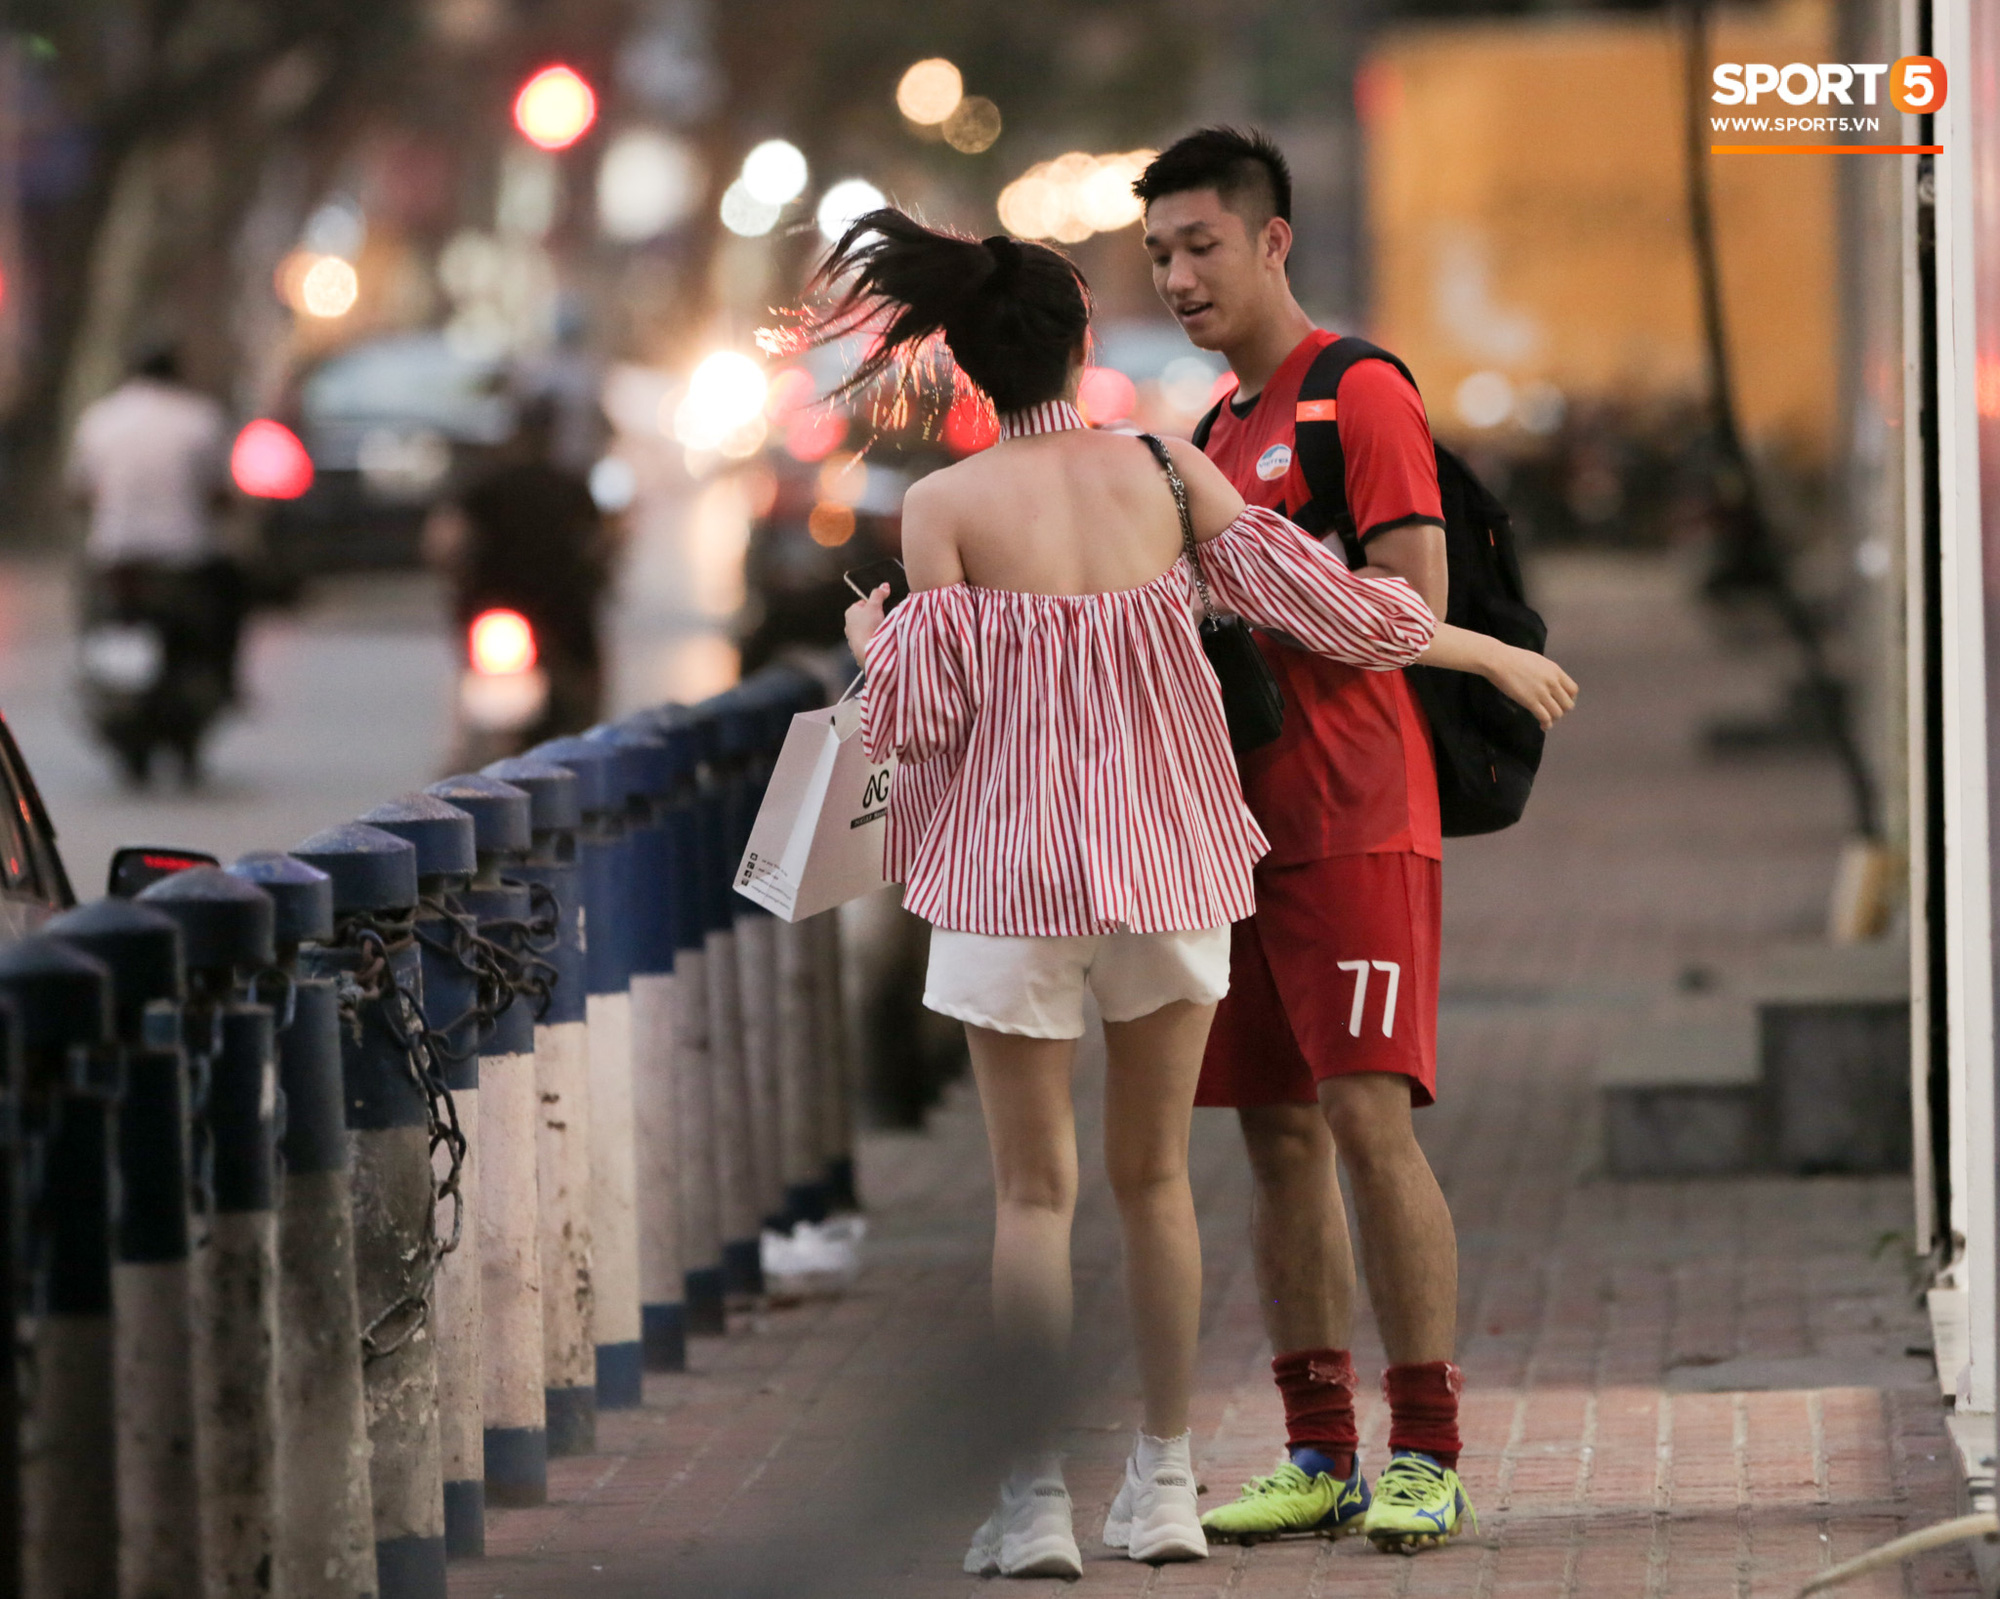 Trọng Đại đánh lẻ, tình tứ bên bạn gái xinh đẹp sau trận giao hữu với Hà Nội FC - Ảnh 1.